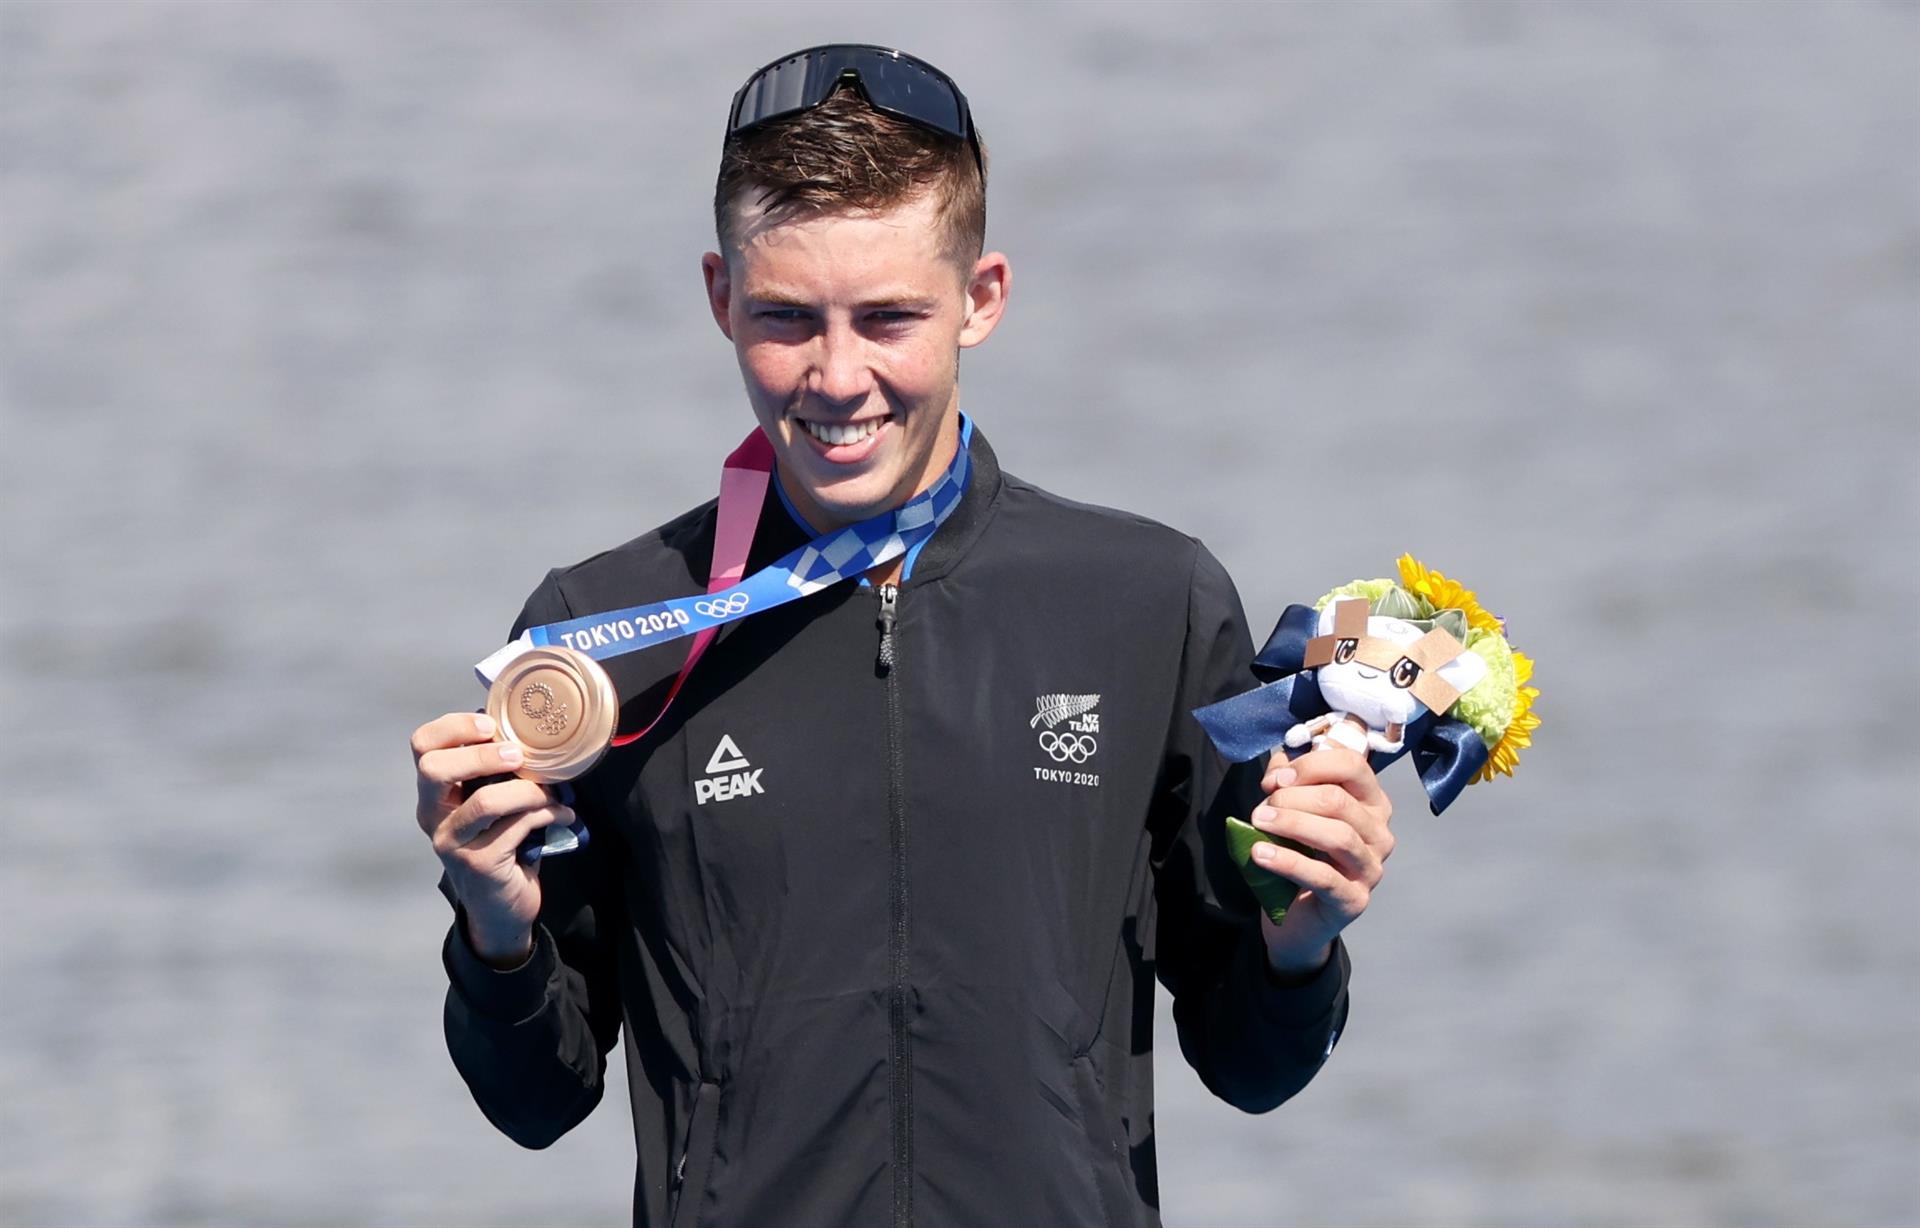 Un divertido mensaje le dedicó su ex novia a Hayden Wilde, quien logró la primera medalla olímpica para Nueva Zelanda tras ganar el bronce en el triatlón.